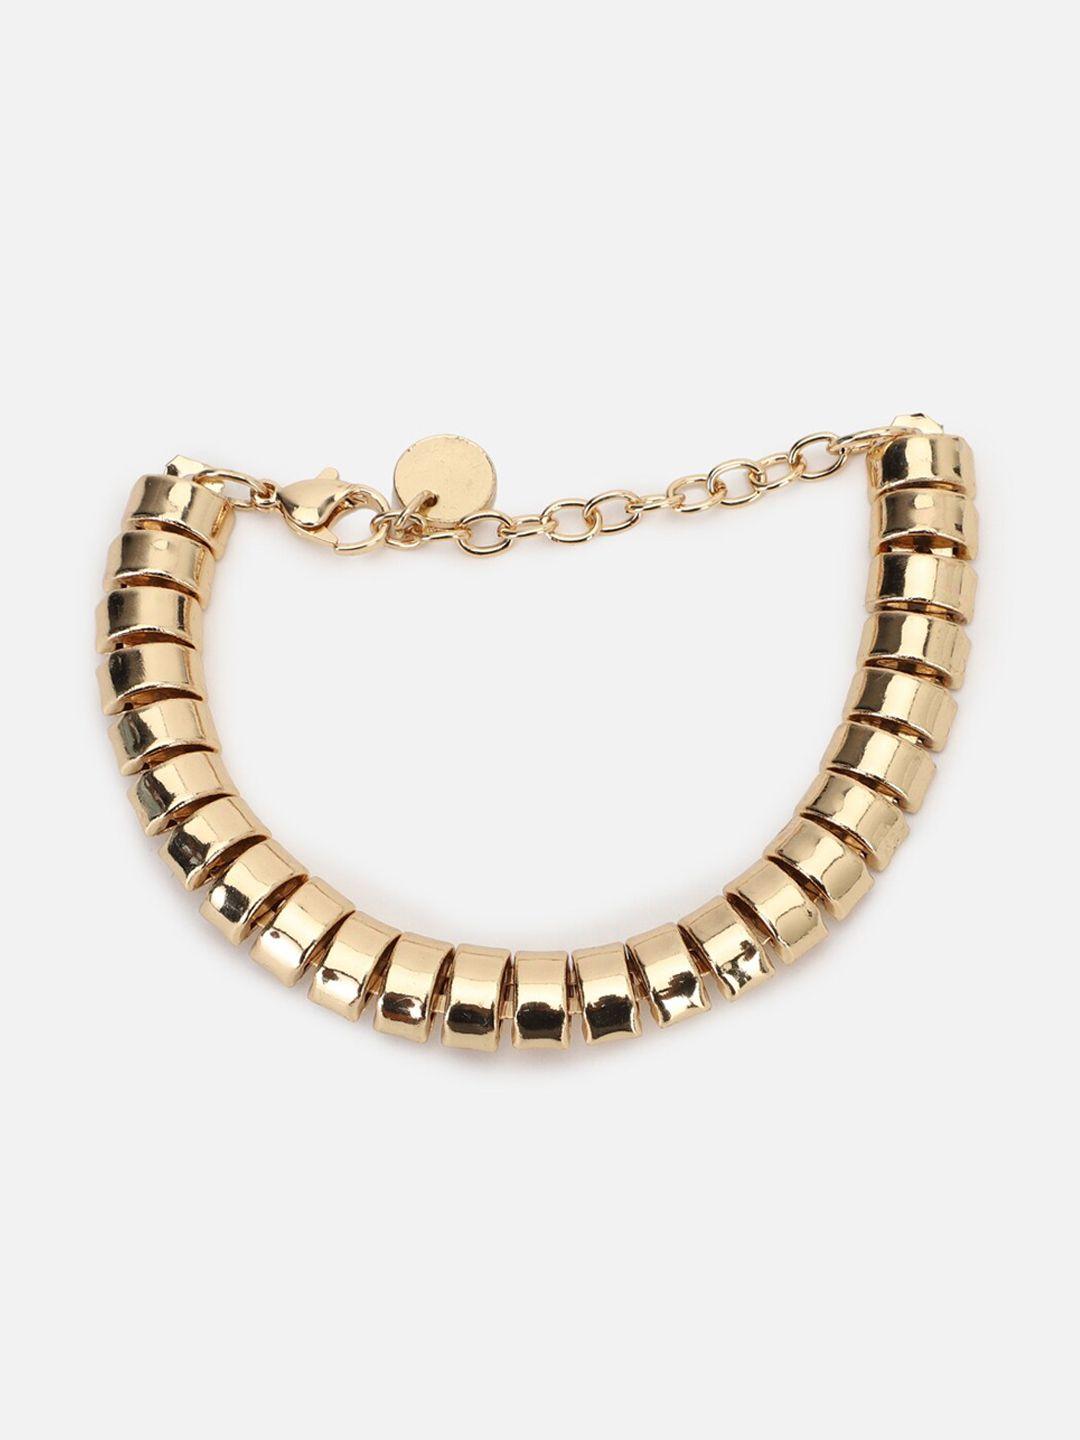 forever-21-women-gold-toned-bangle-style-bracelet